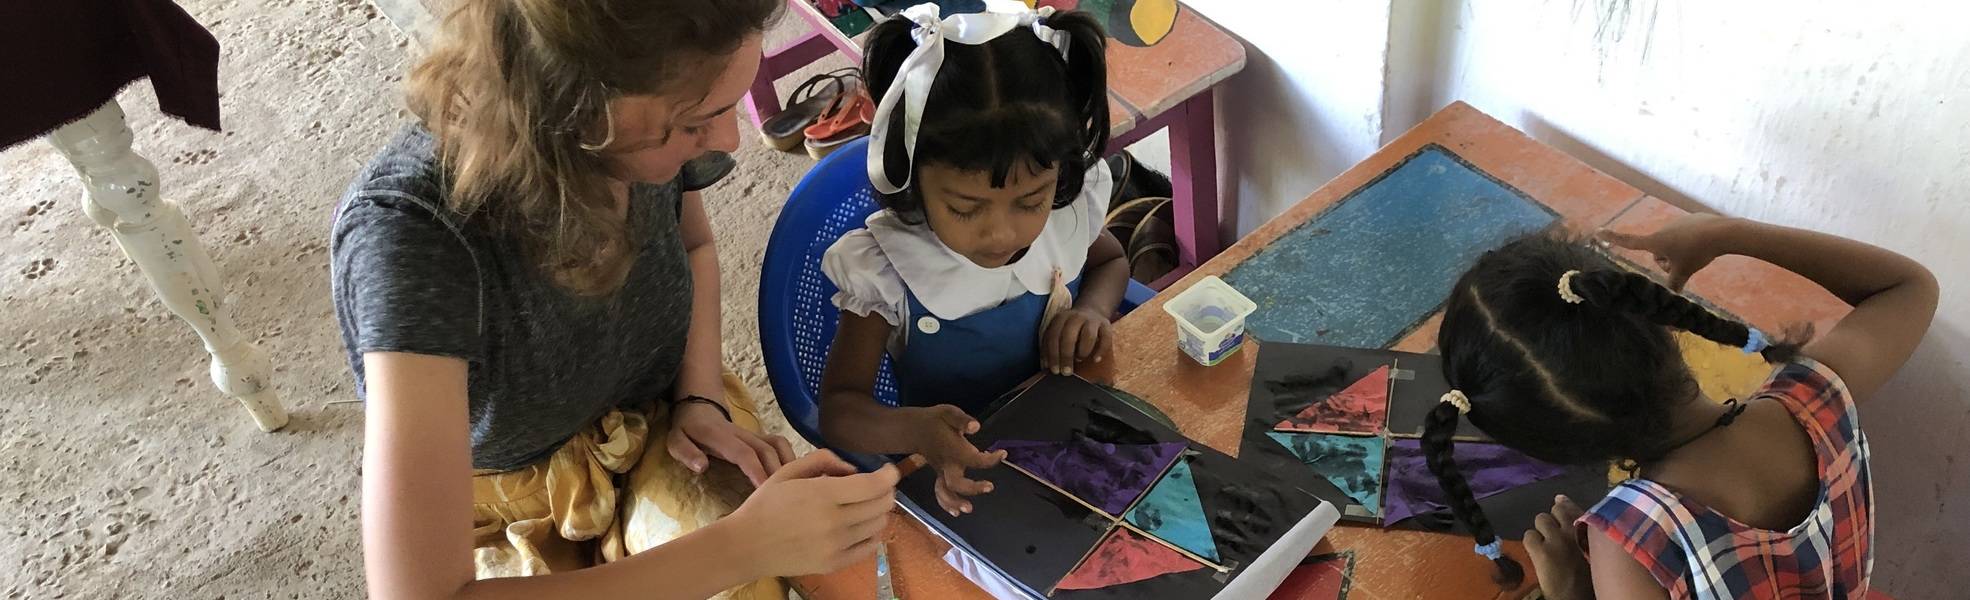 Freiwilligenarbeit in der Kinderbetreuung auf Sri Lanka